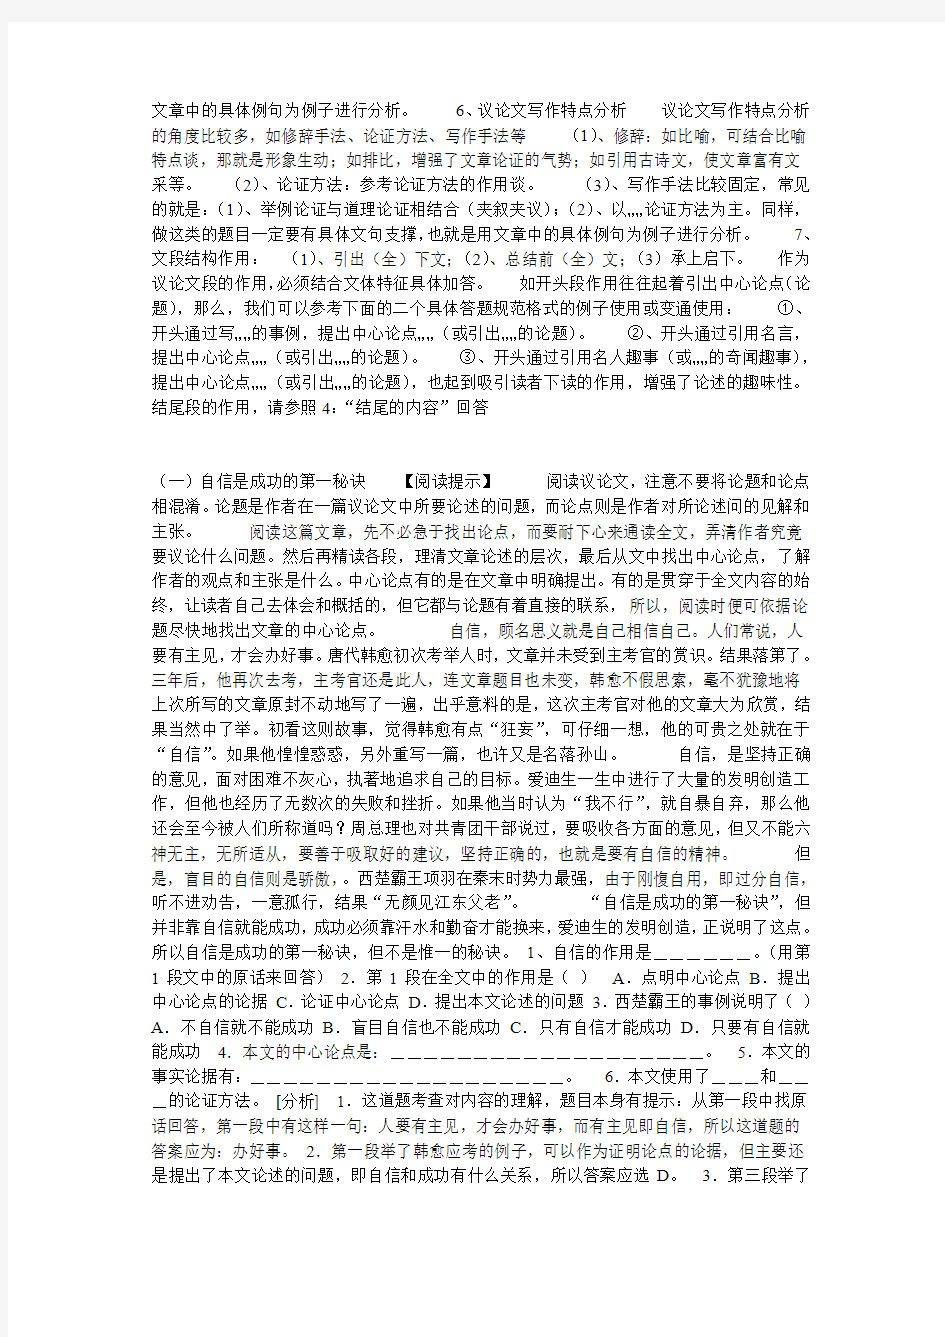 初中语文议论文阅读答题技巧与练习 第一部分 议论文答题技巧  一